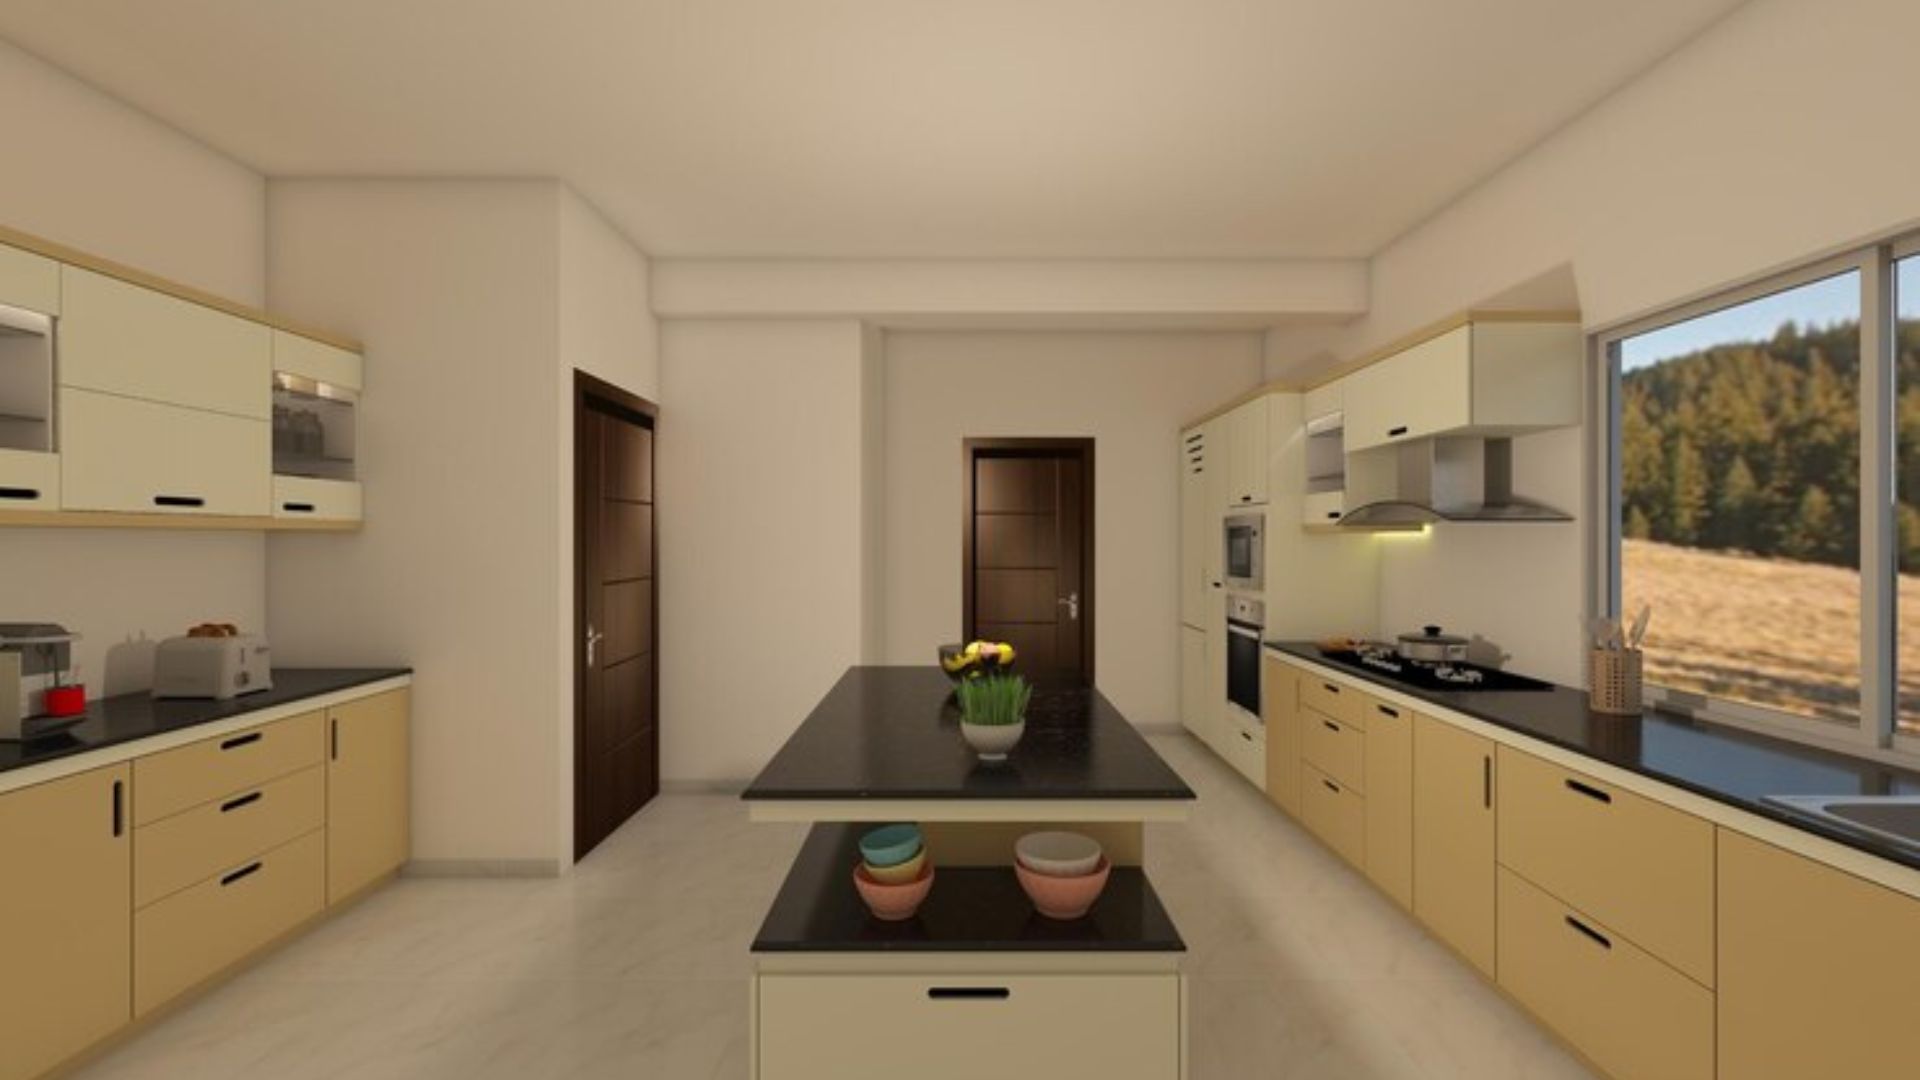 Parallel Modular Kitchen Designs in Gurgaon at Best Price - Urban Design Co